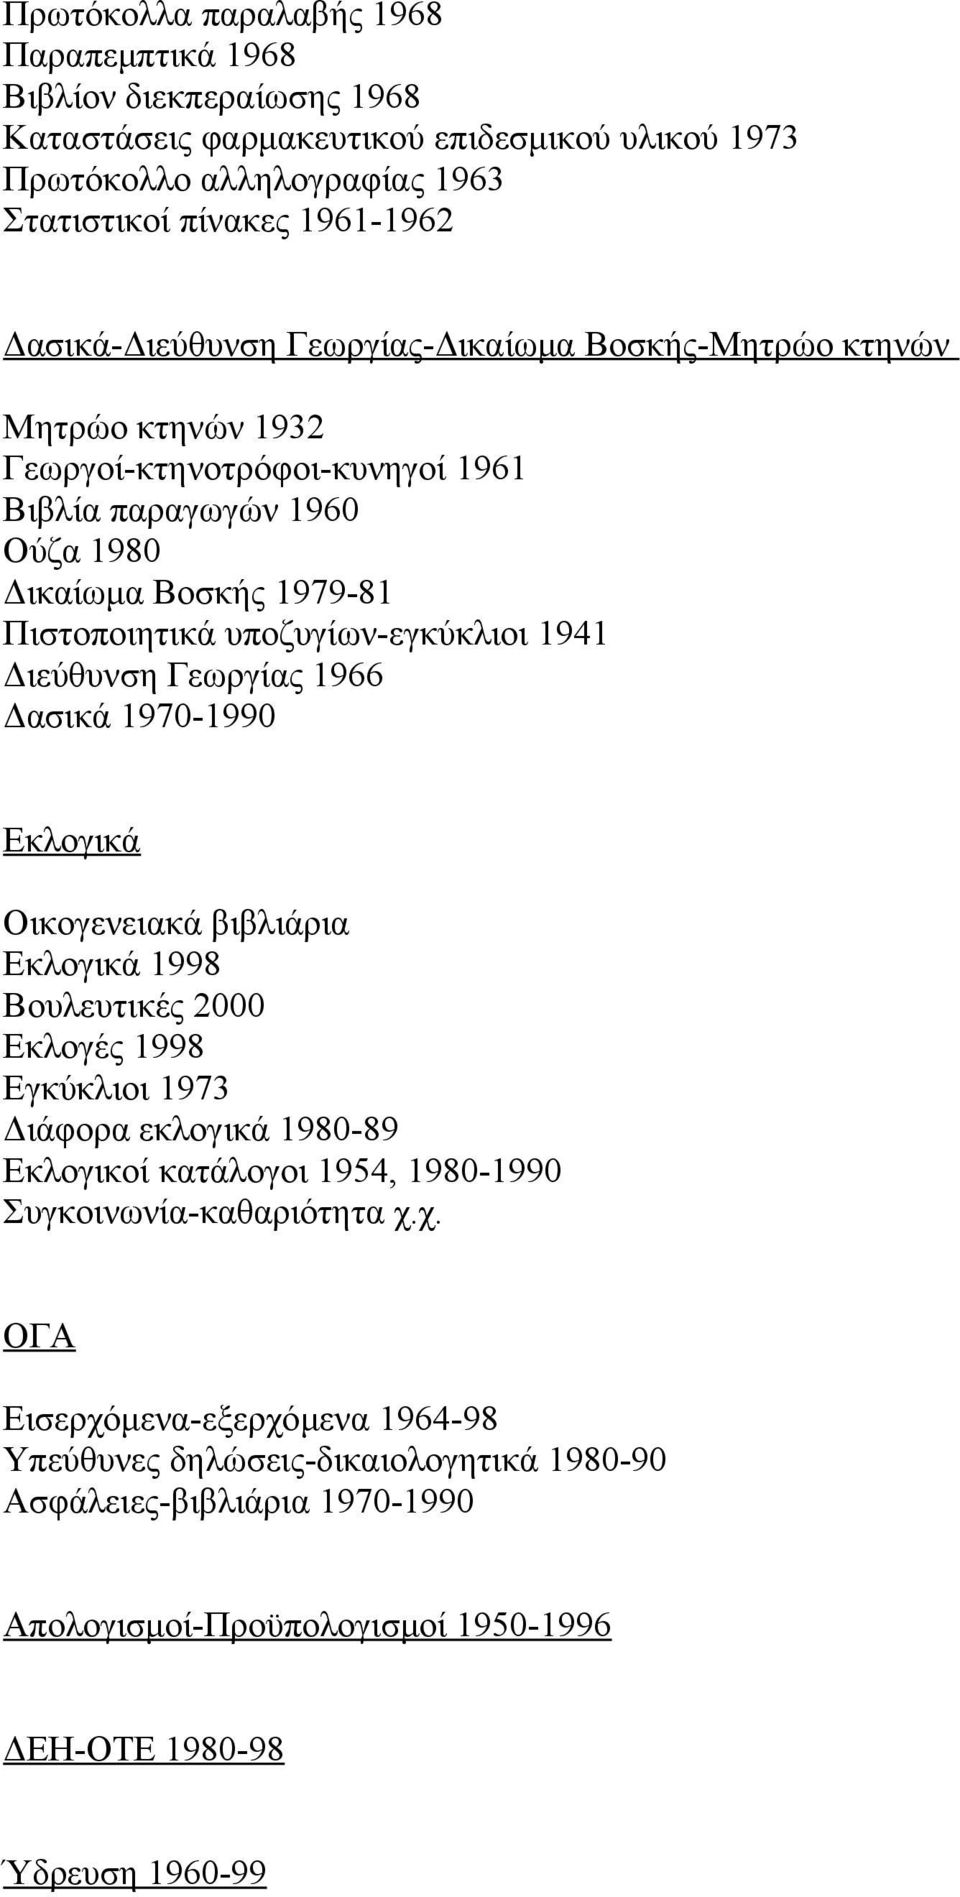 υποζυγίων-εγκύκλιοι 1941 Διεύθυνση Γεωργίας 1966 Δασικά 1970-1990 Εκλογικά Οικογενειακά βιβλιάρια Εκλογικά 1998 Βουλευτικές 2000 Εκλογές 1998 Εγκύκλιοι 1973 Διάφορα εκλογικά 1980-89 Εκλογικοί